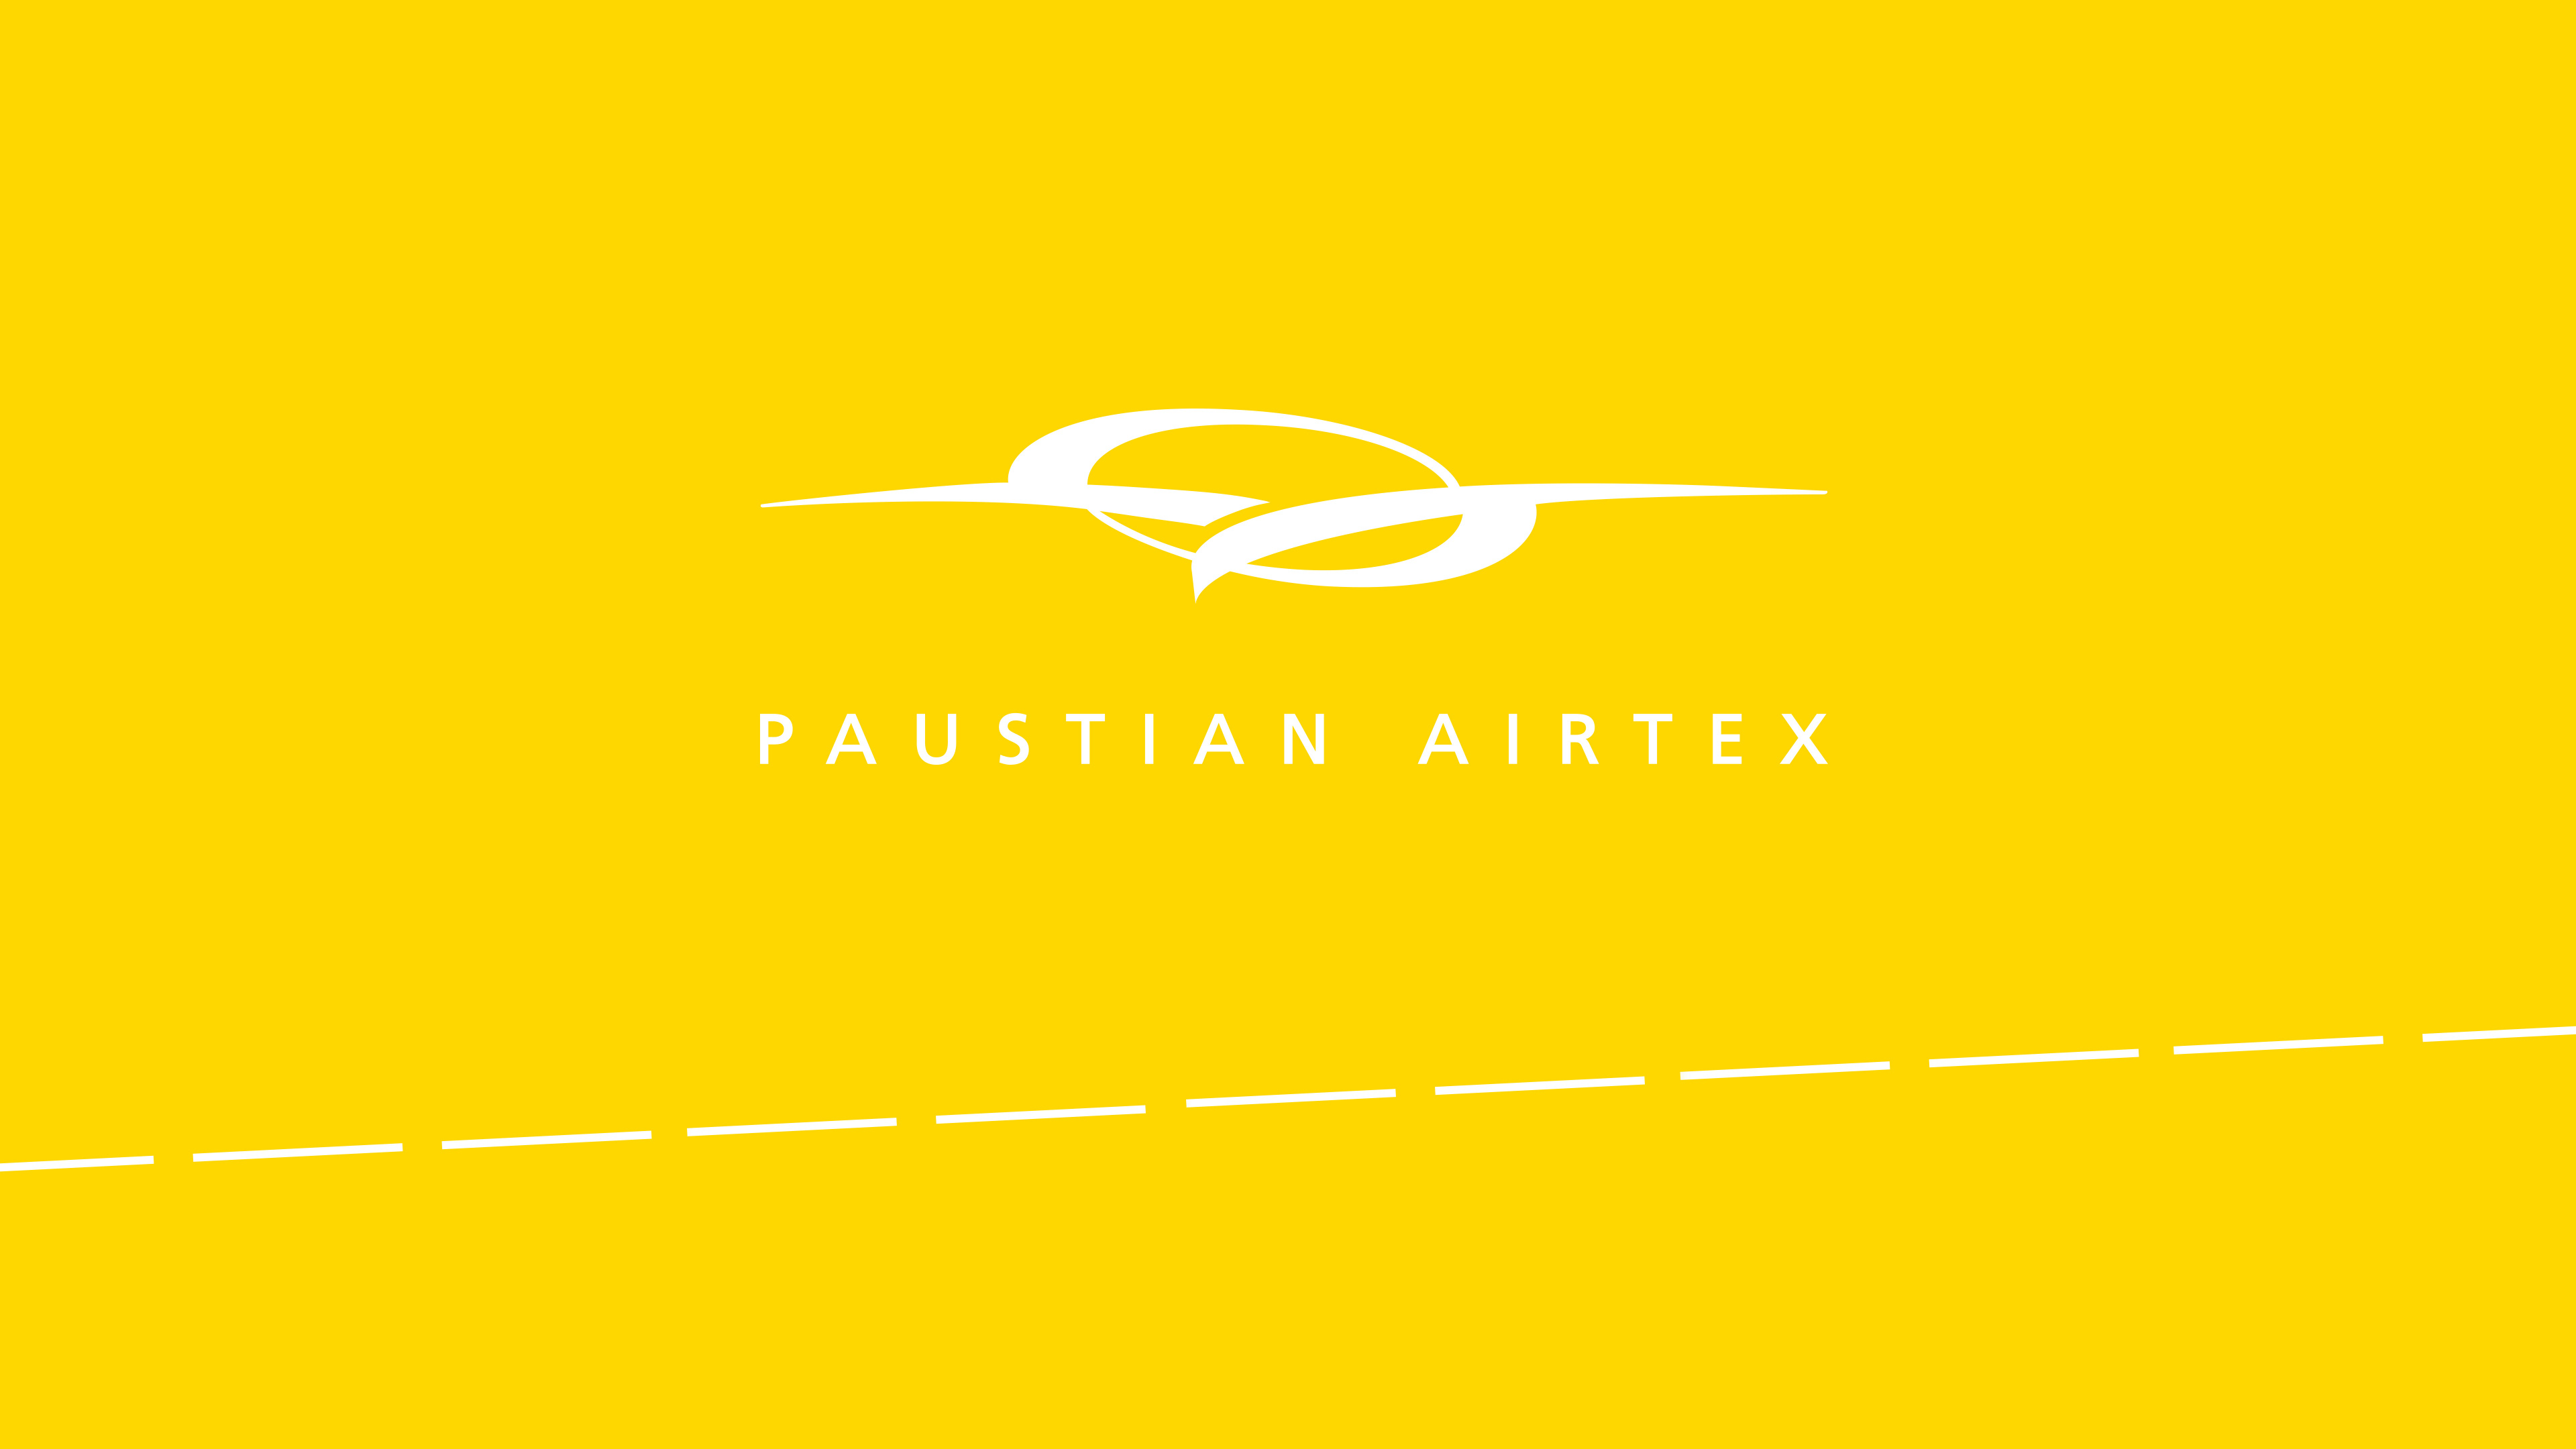 Logo von Paustian Airtex mit gelben Hintergrund